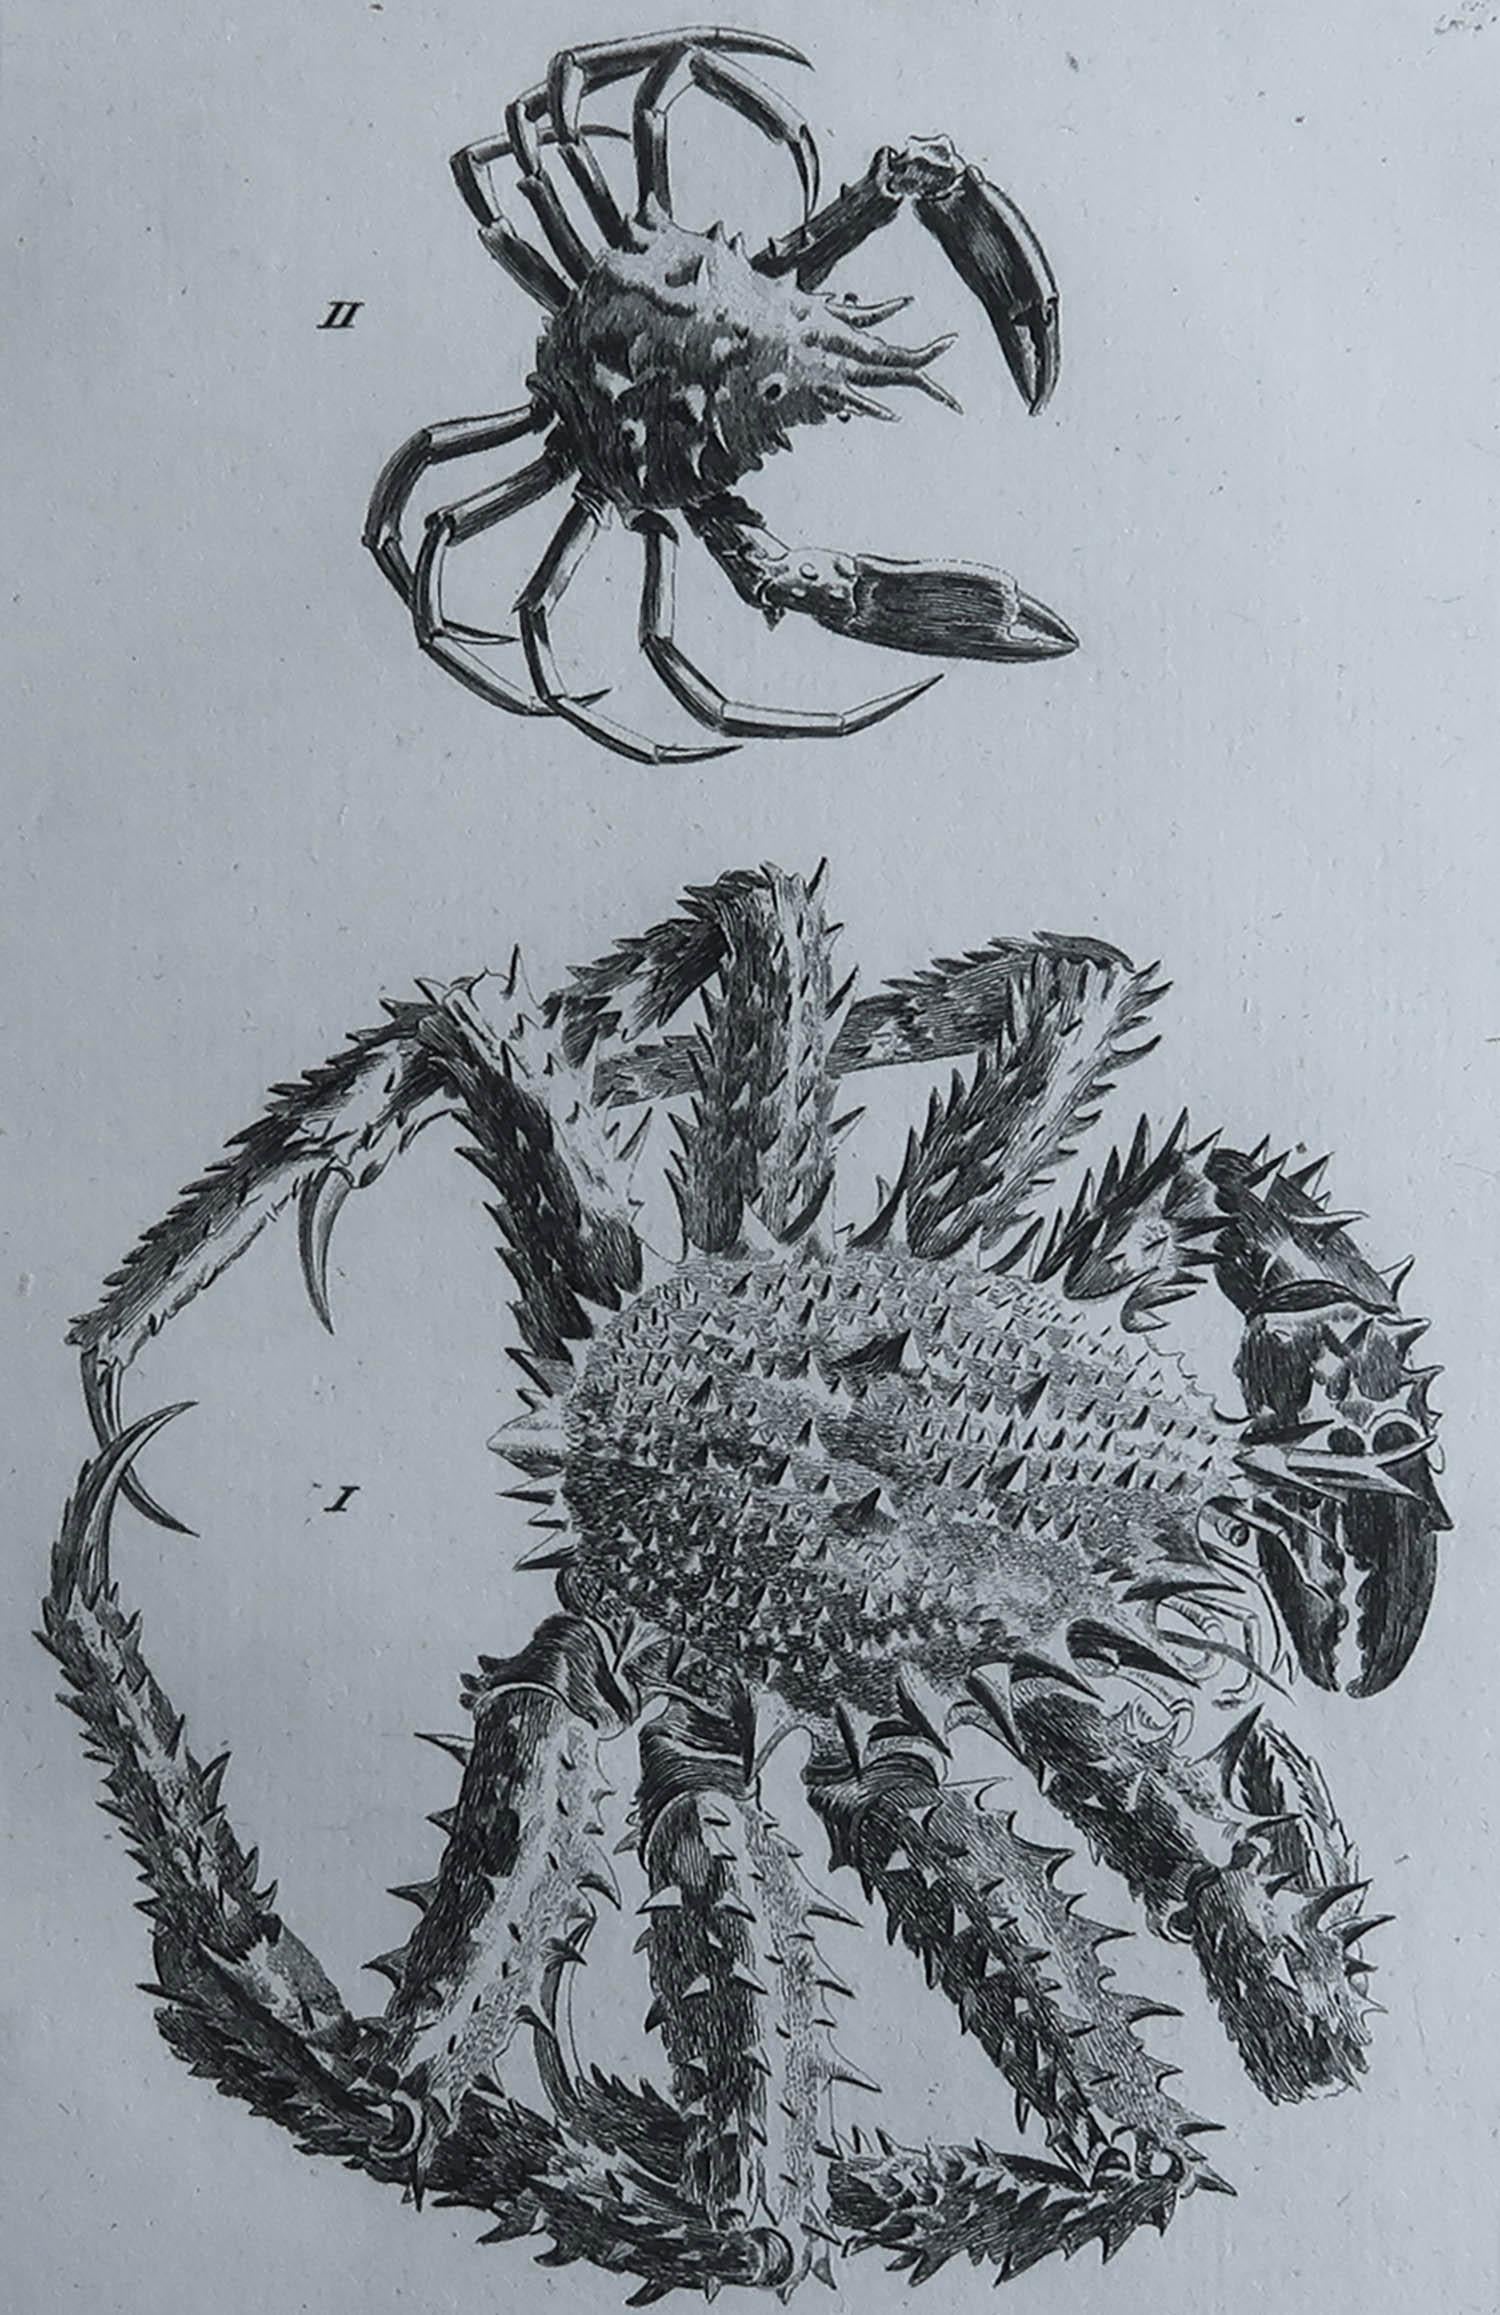 De belles images de crabes

Gravure sur cuivre d'après Moses Griffiths

Publié C.1790

Non encadré.

Livraison gratuite. 



